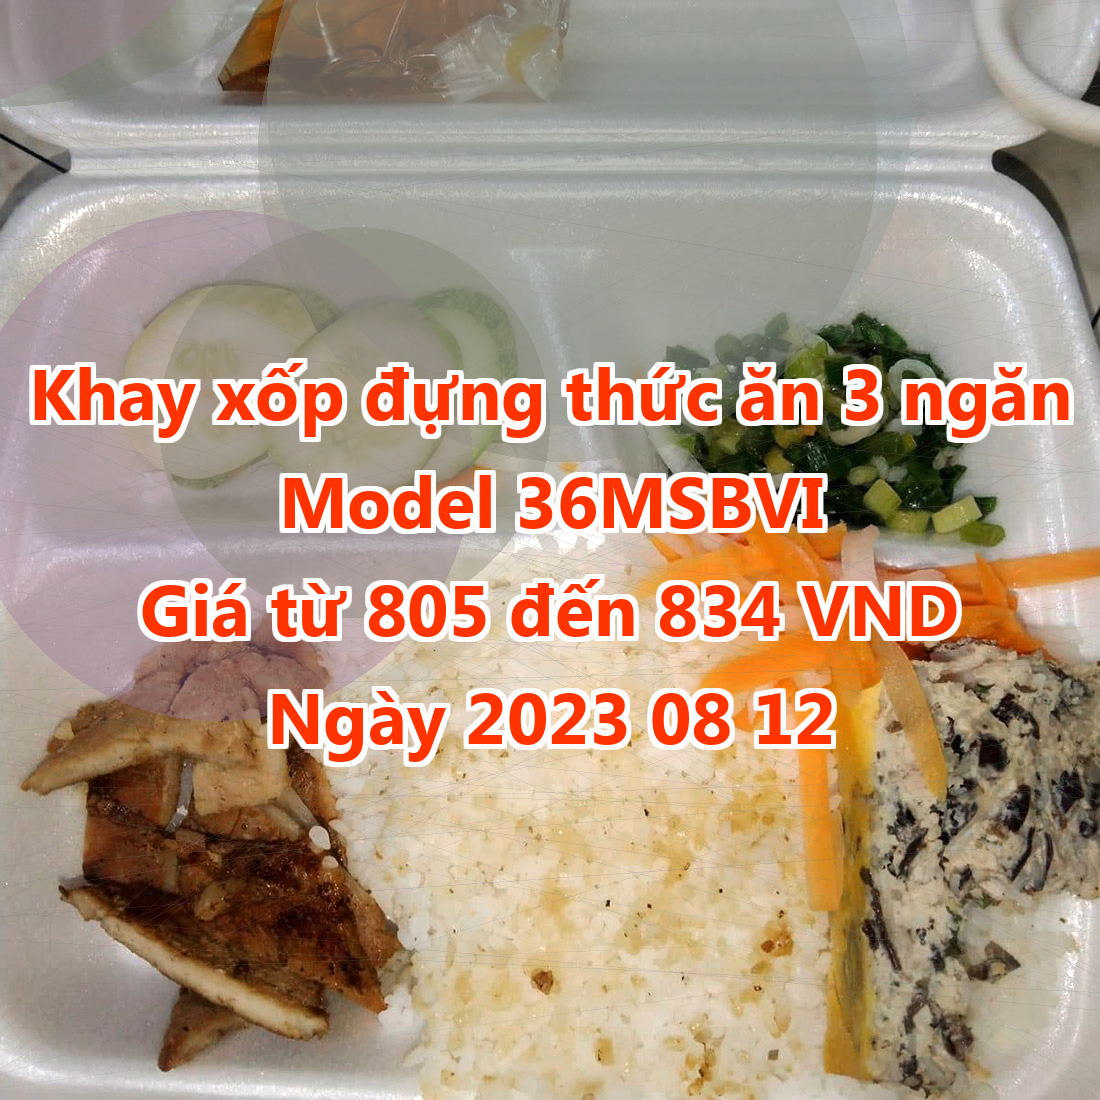 Khay xốp đựng thức ăn 3 ngăn - Model 36MSBVI - Giá 805 VND